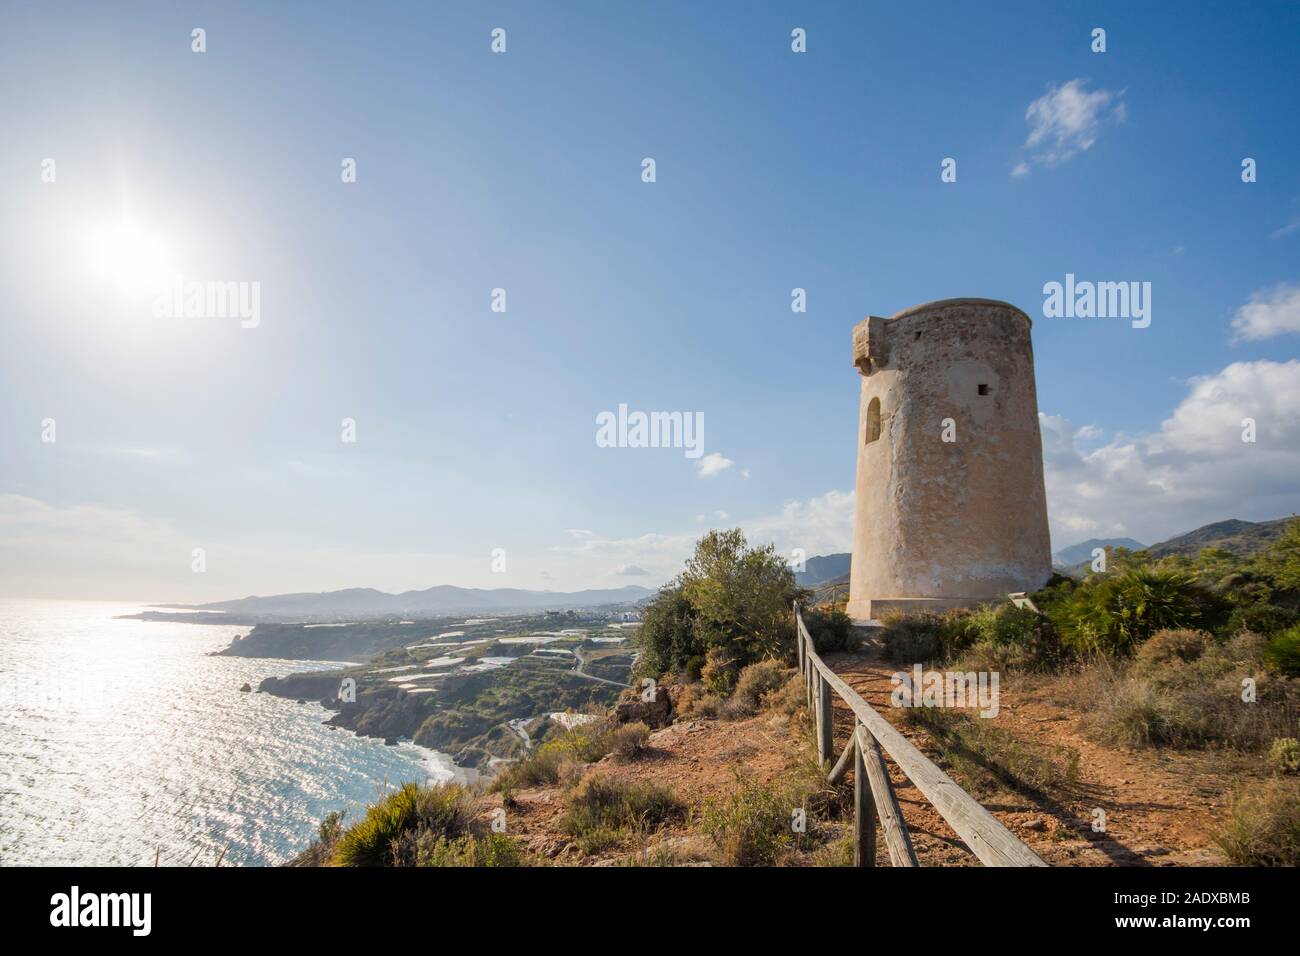 Atalaya costera del siglo 16, playa de Maro Maro. El sur de España. Foto de stock